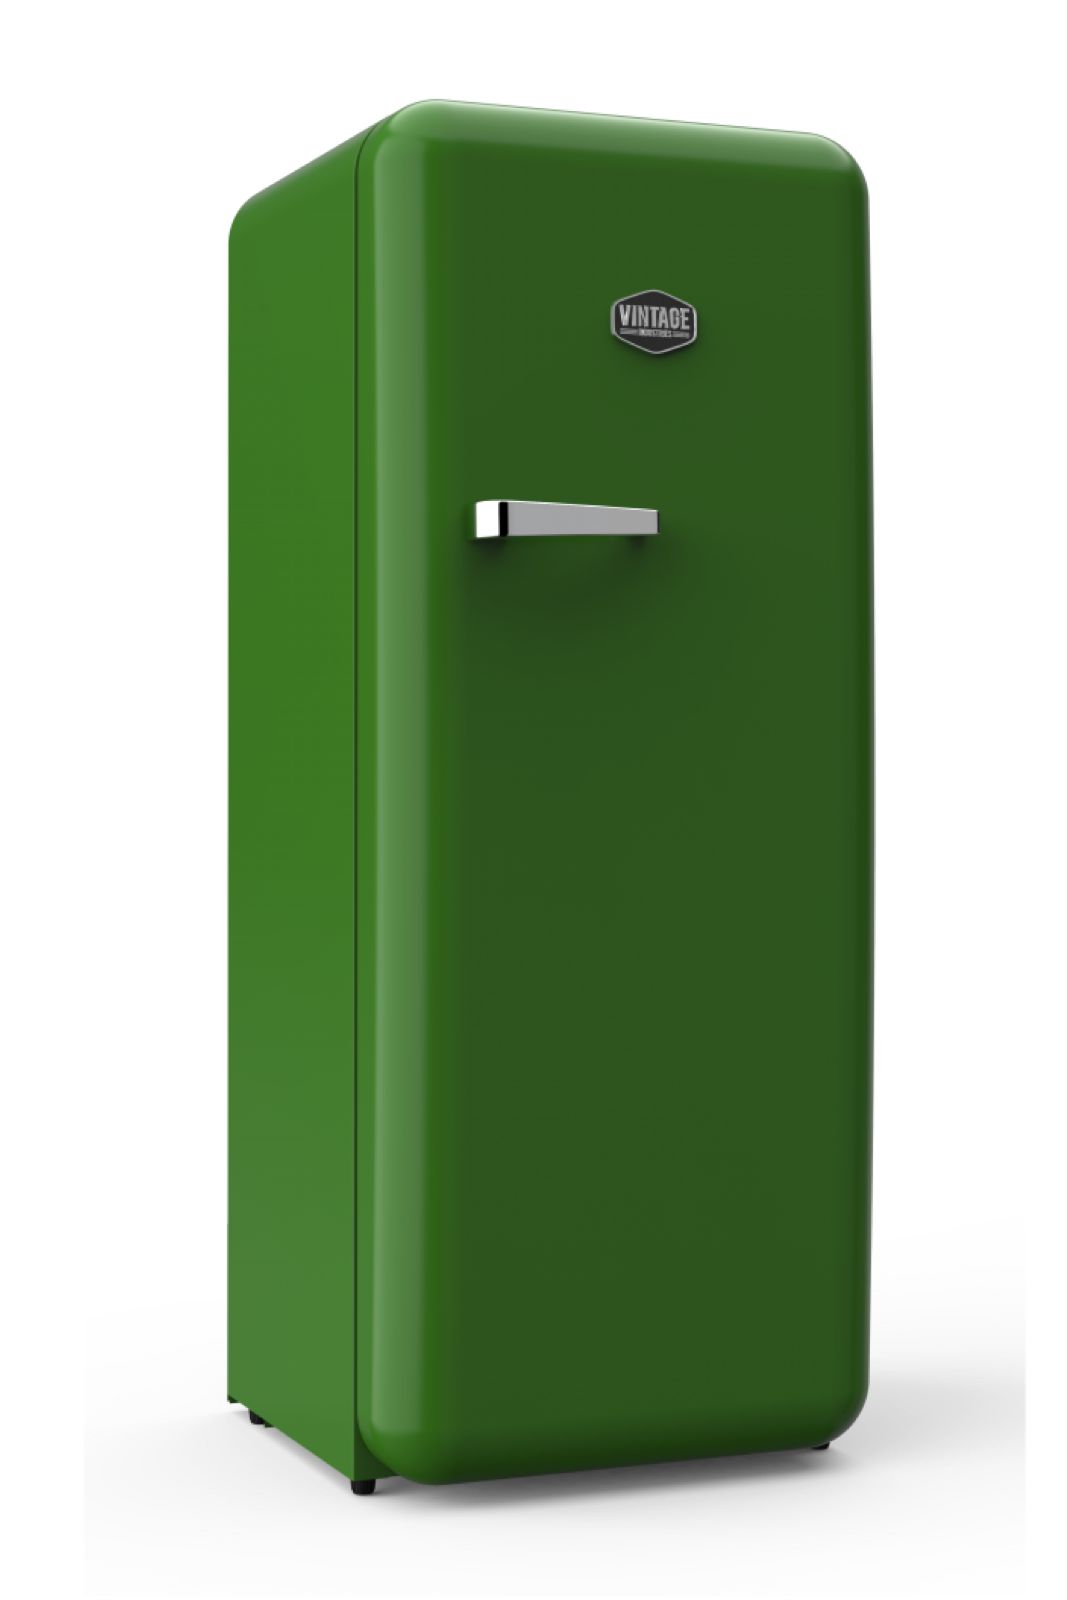 Gastro-Cool - Sonderedition - Vintage Kühlschrank Edelsteingrün matt - VIRC330 - seitlich